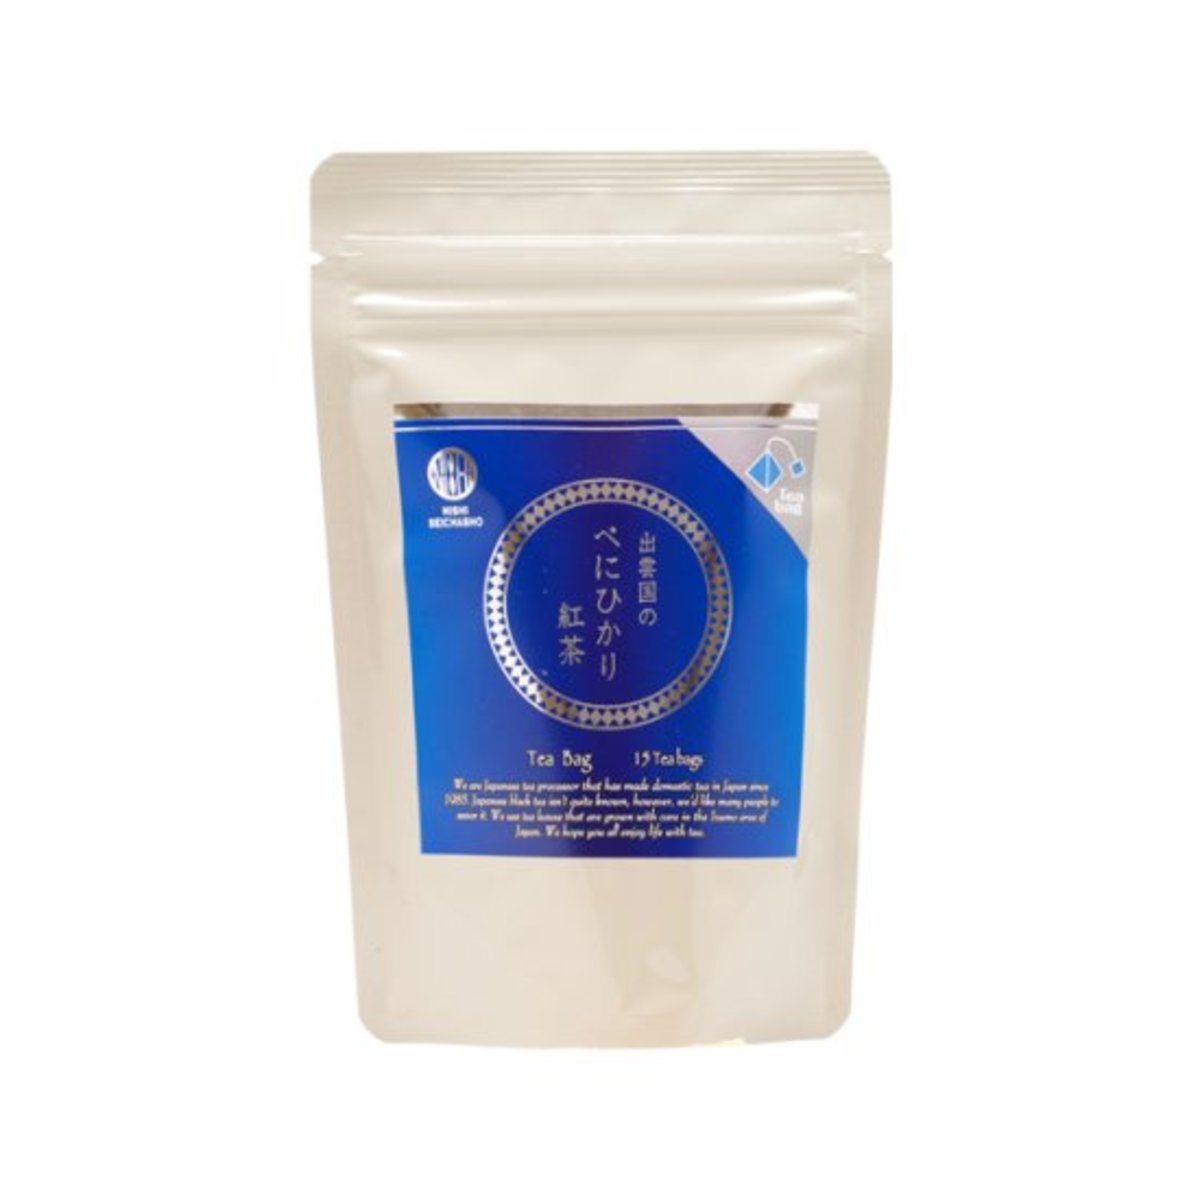 国產出雲国のべにひかり紅茶 ティーバッグ  (2g×15P) Japan Kuni Beni Hikari Red Tea Bags （2g×15P)